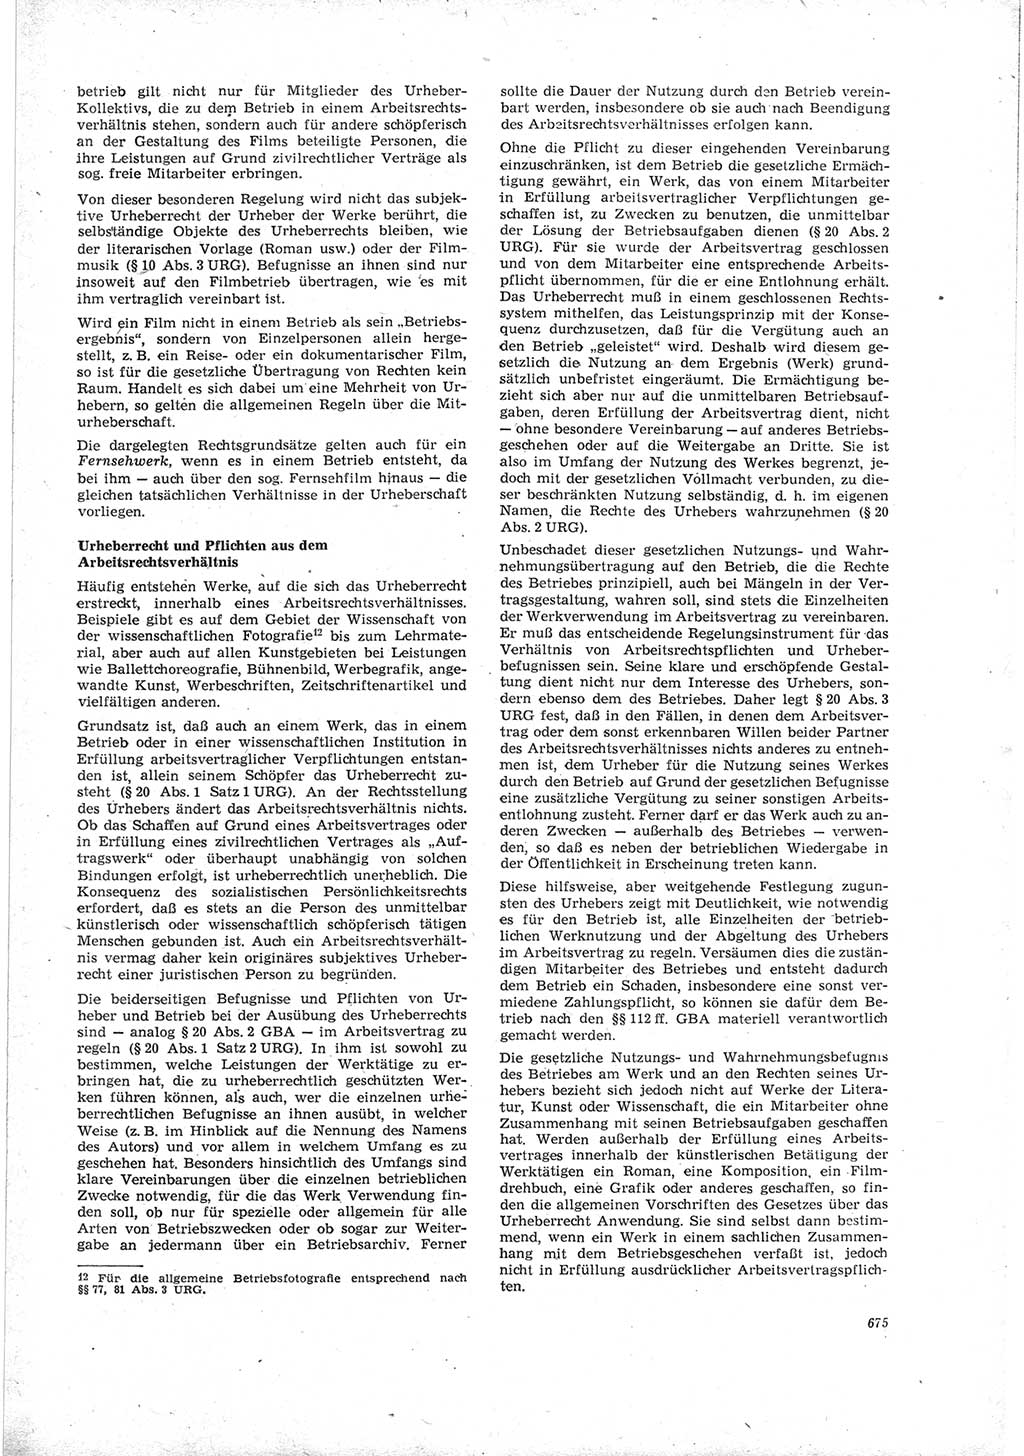 Neue Justiz (NJ), Zeitschrift für Recht und Rechtswissenschaft [Deutsche Demokratische Republik (DDR)], 19. Jahrgang 1965, Seite 675 (NJ DDR 1965, S. 675)